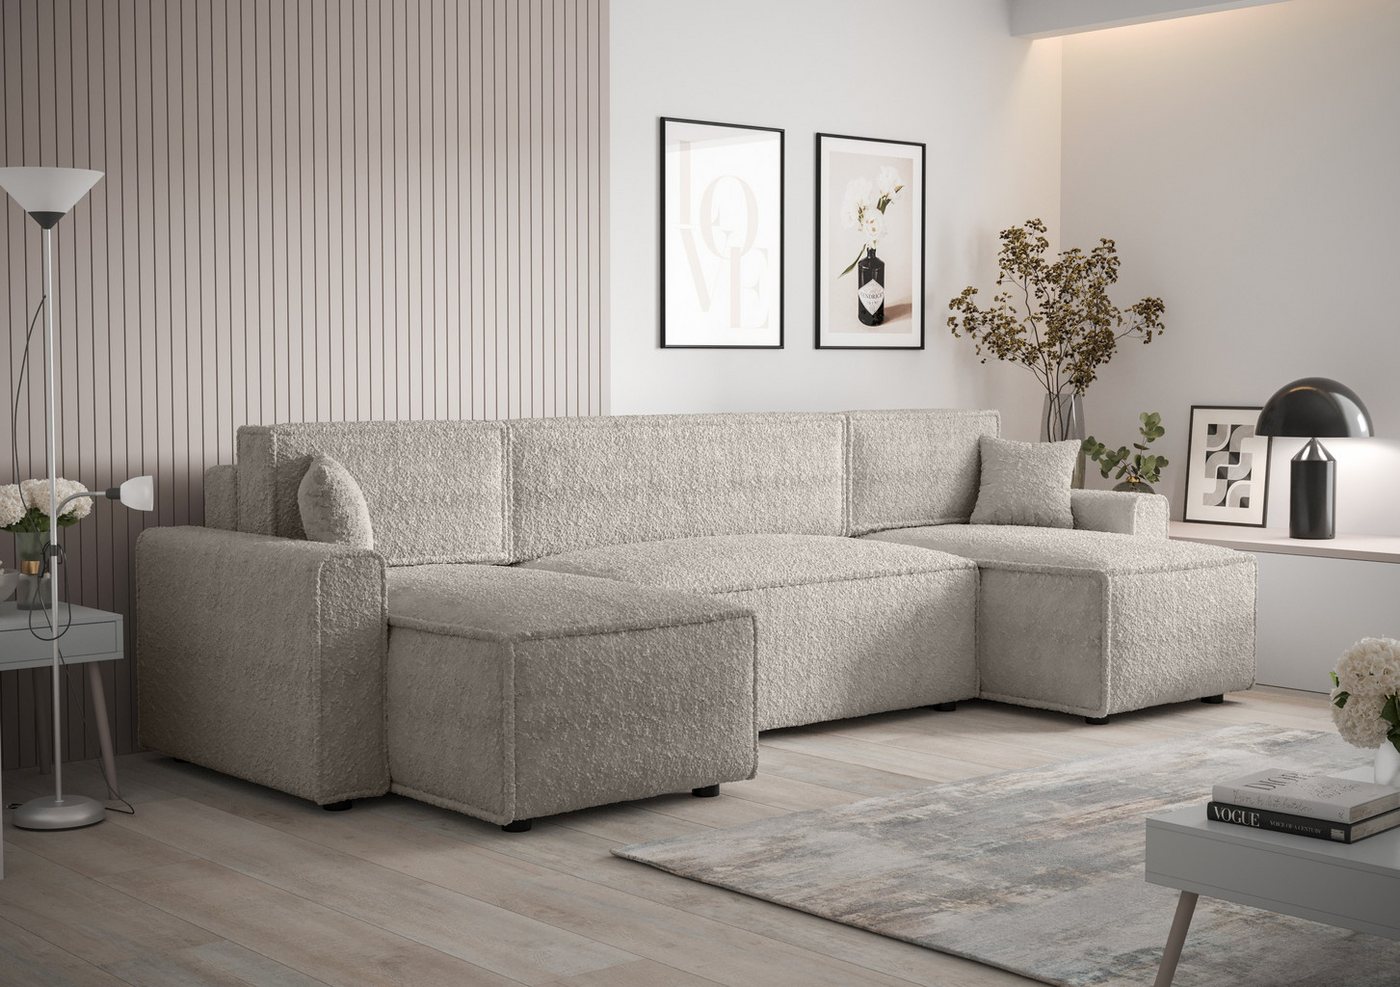 ALTDECOR Wohnlandschaft MIR-U-BIS, Couch mit Schlaffunktion, Wohnzimmer - W günstig online kaufen